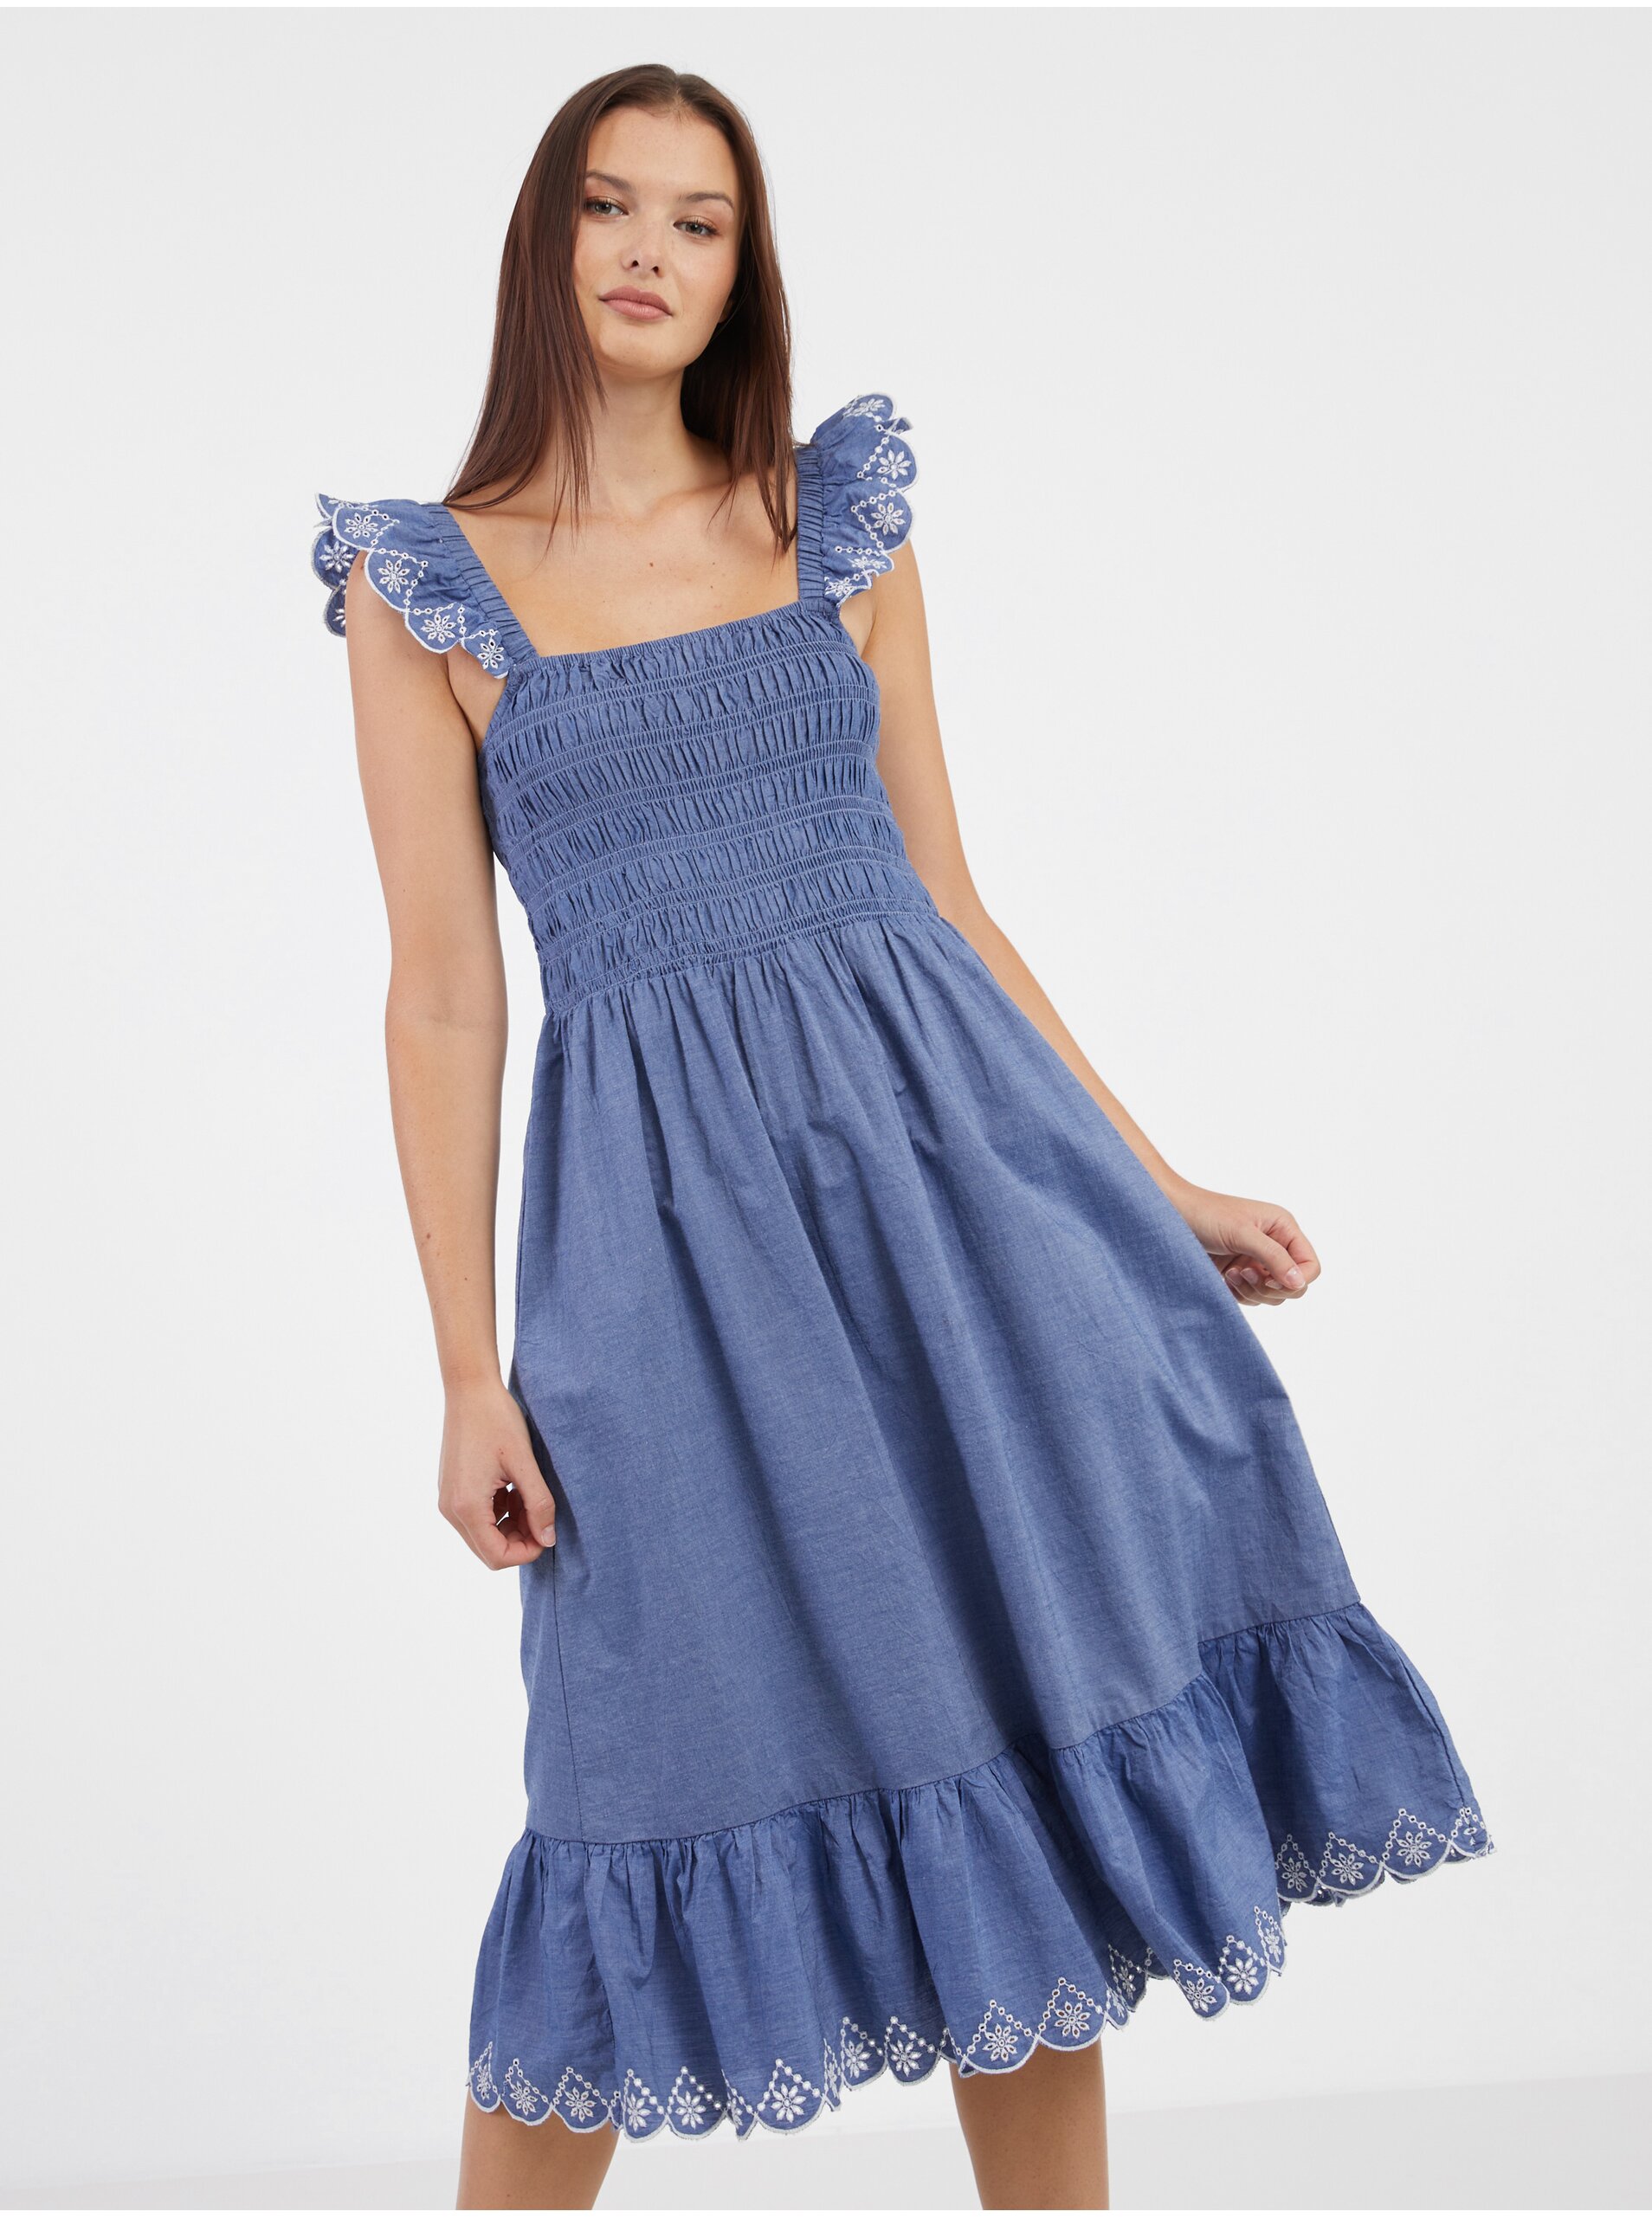 Modré dámské šaty VILA Milly